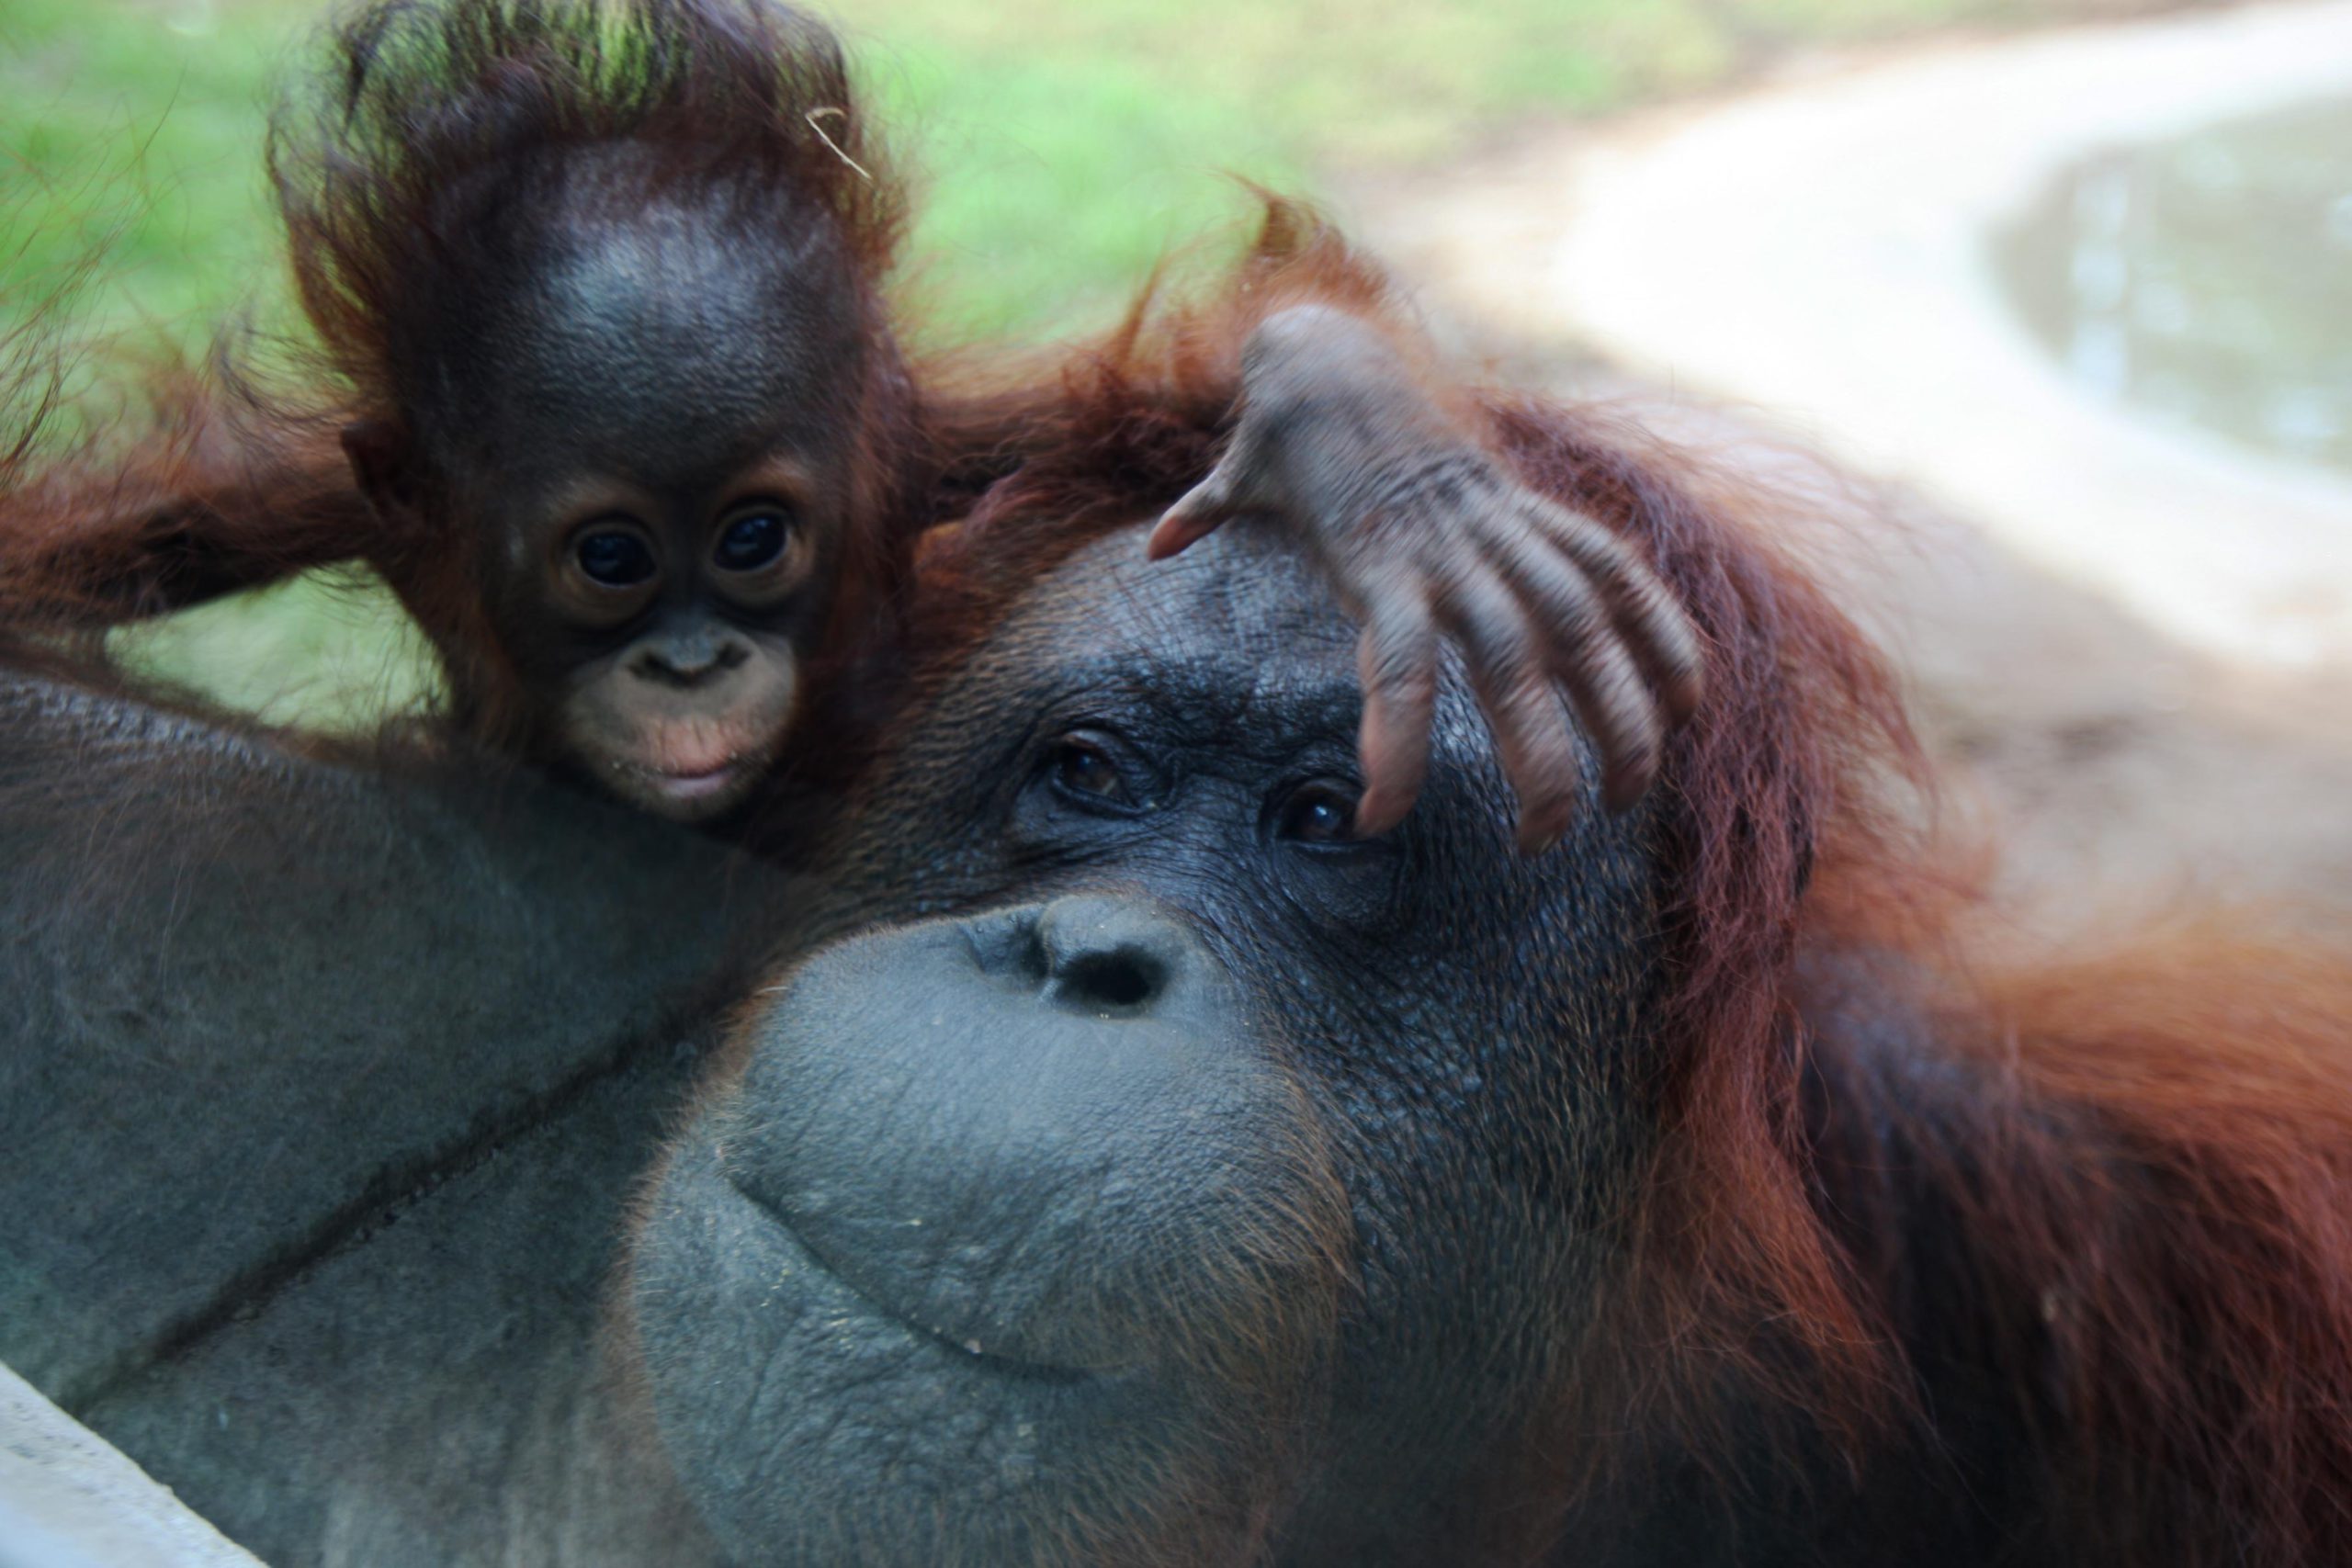 En Guadalajara presentan crías de orangután, especie en peligro de extinción